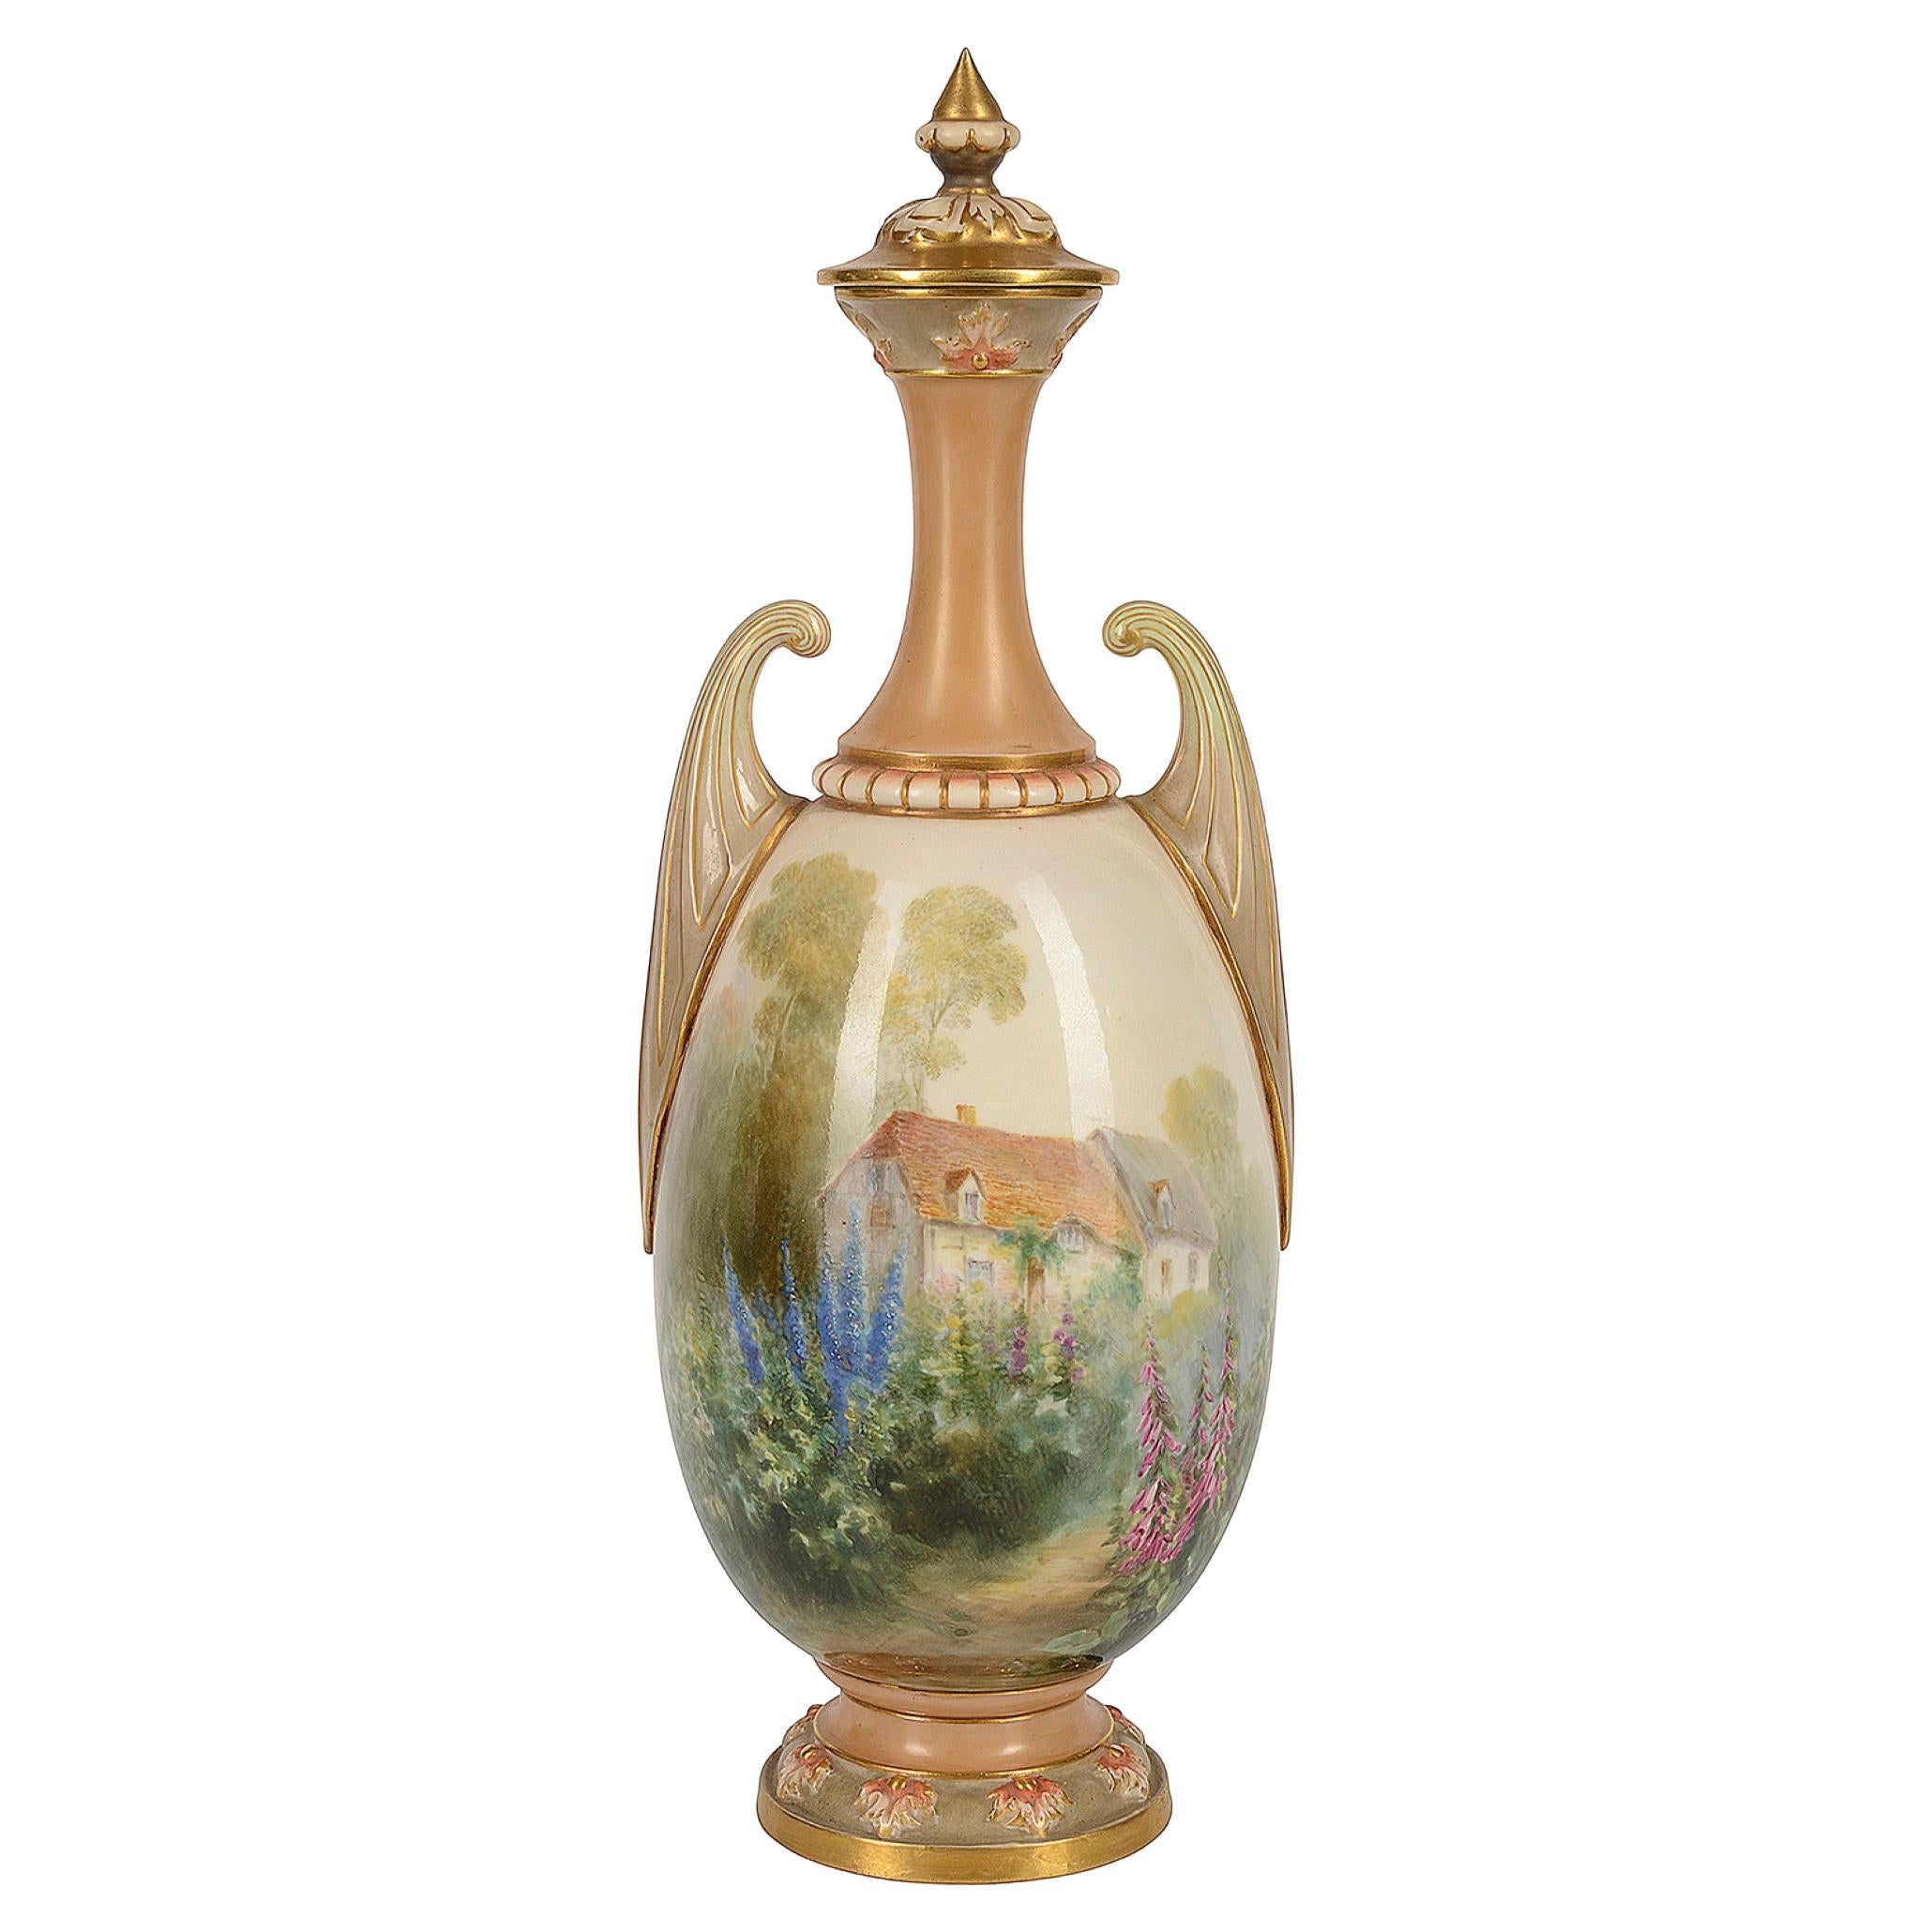 Royal Worcester Lidded Vase, Depicting a Thatched Cottage, Signed Harry Davis